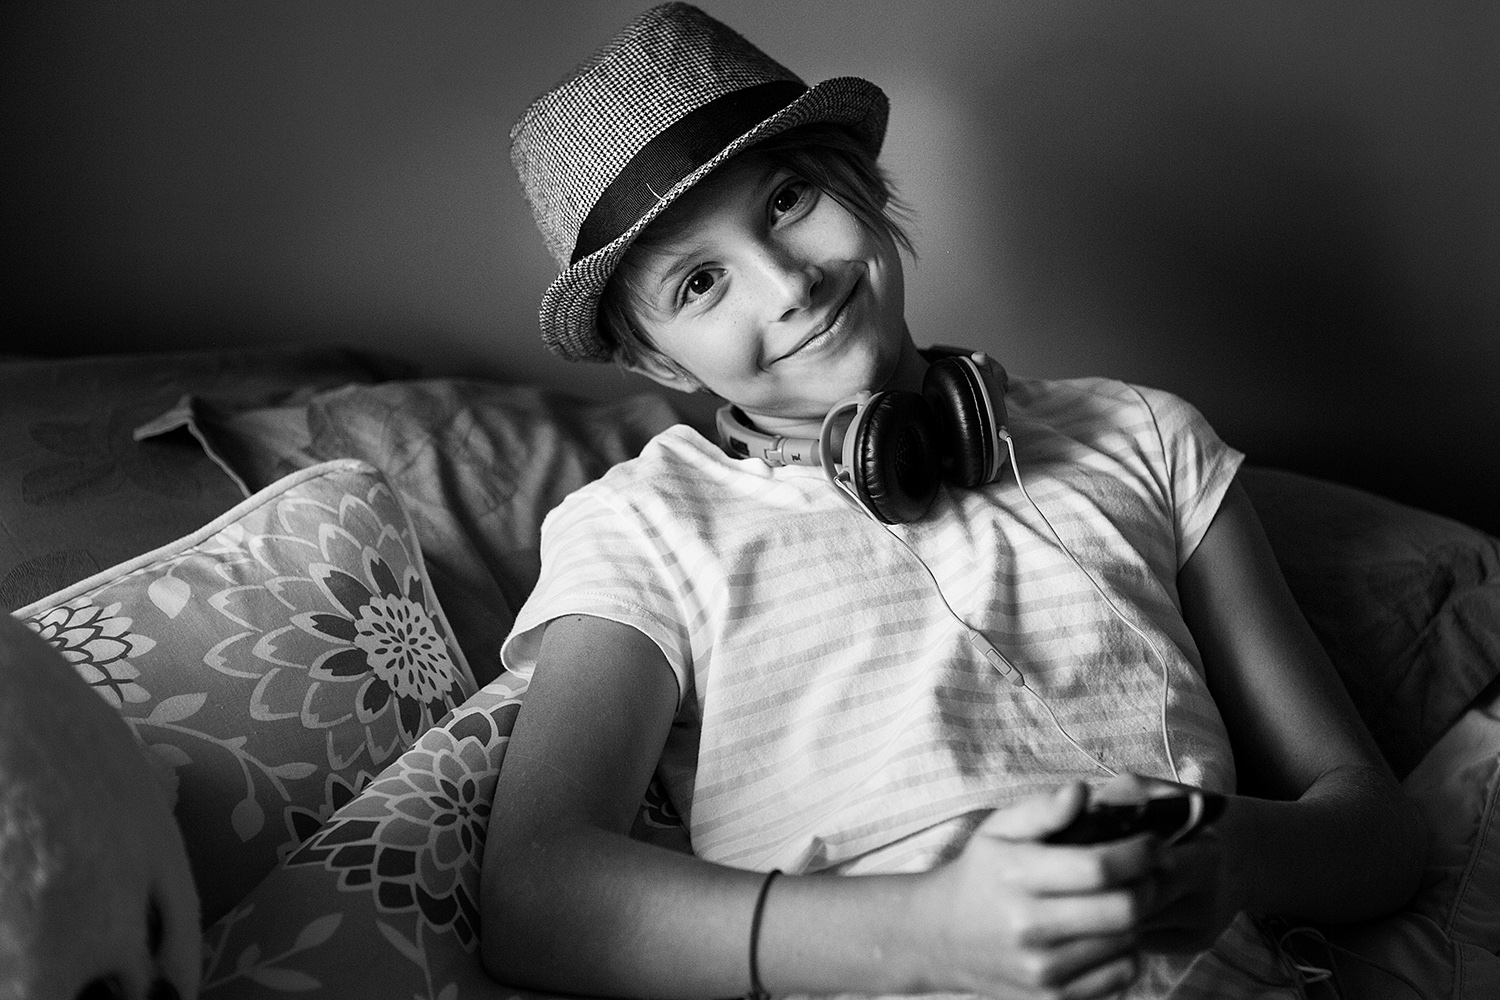 Teen girl with headphones